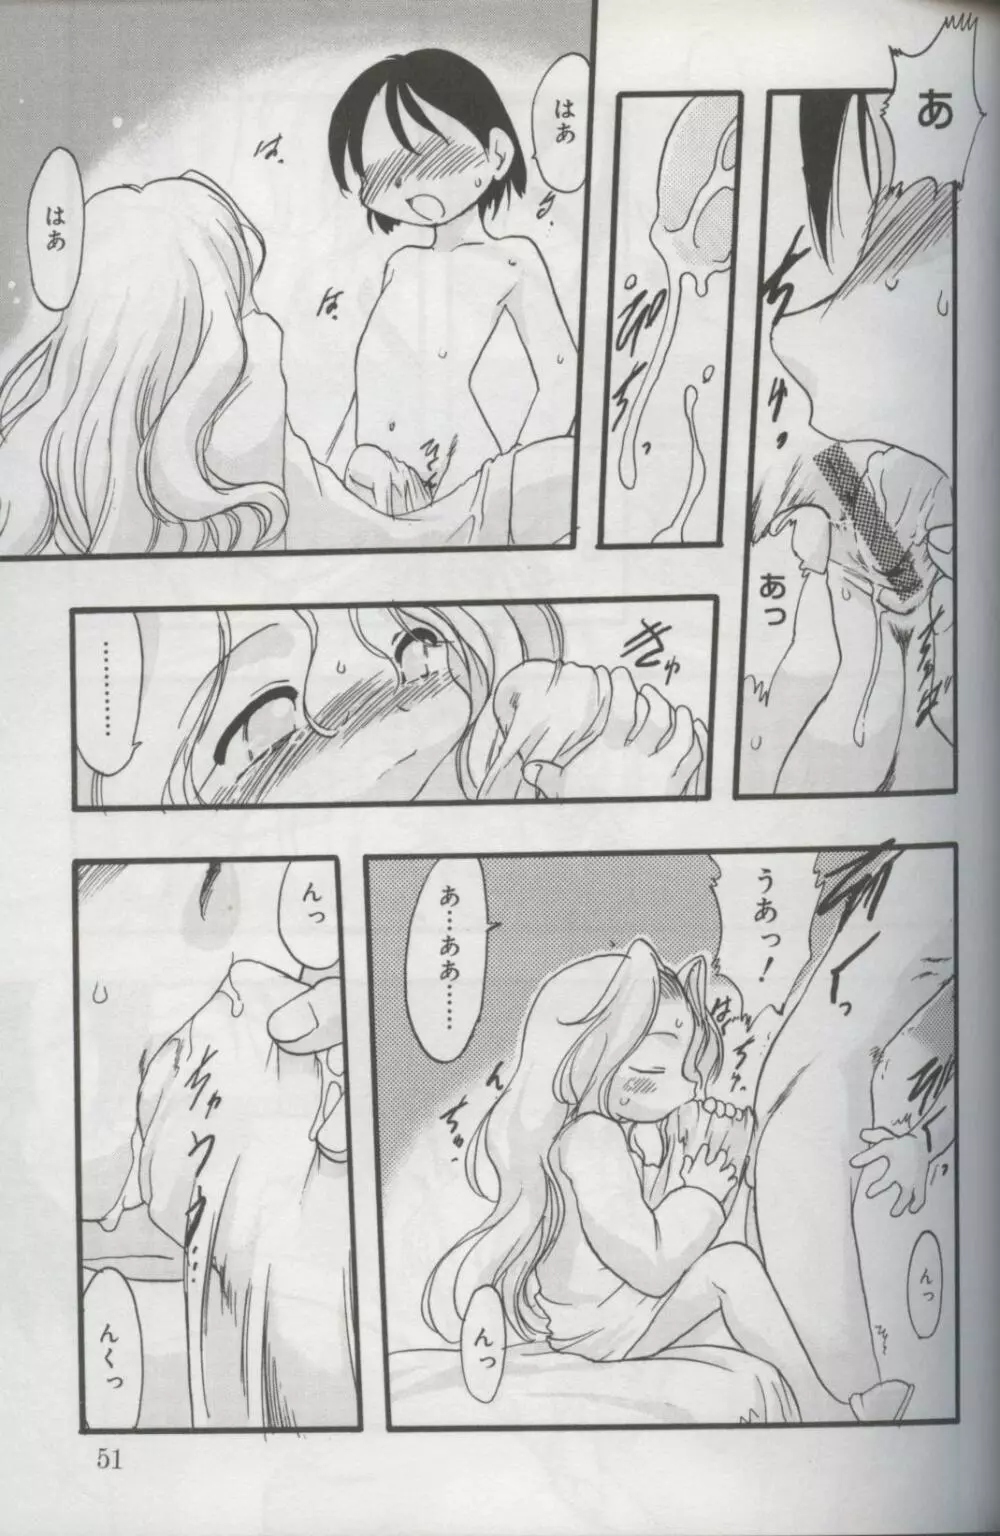 Kotori-kan Vol 3 48ページ